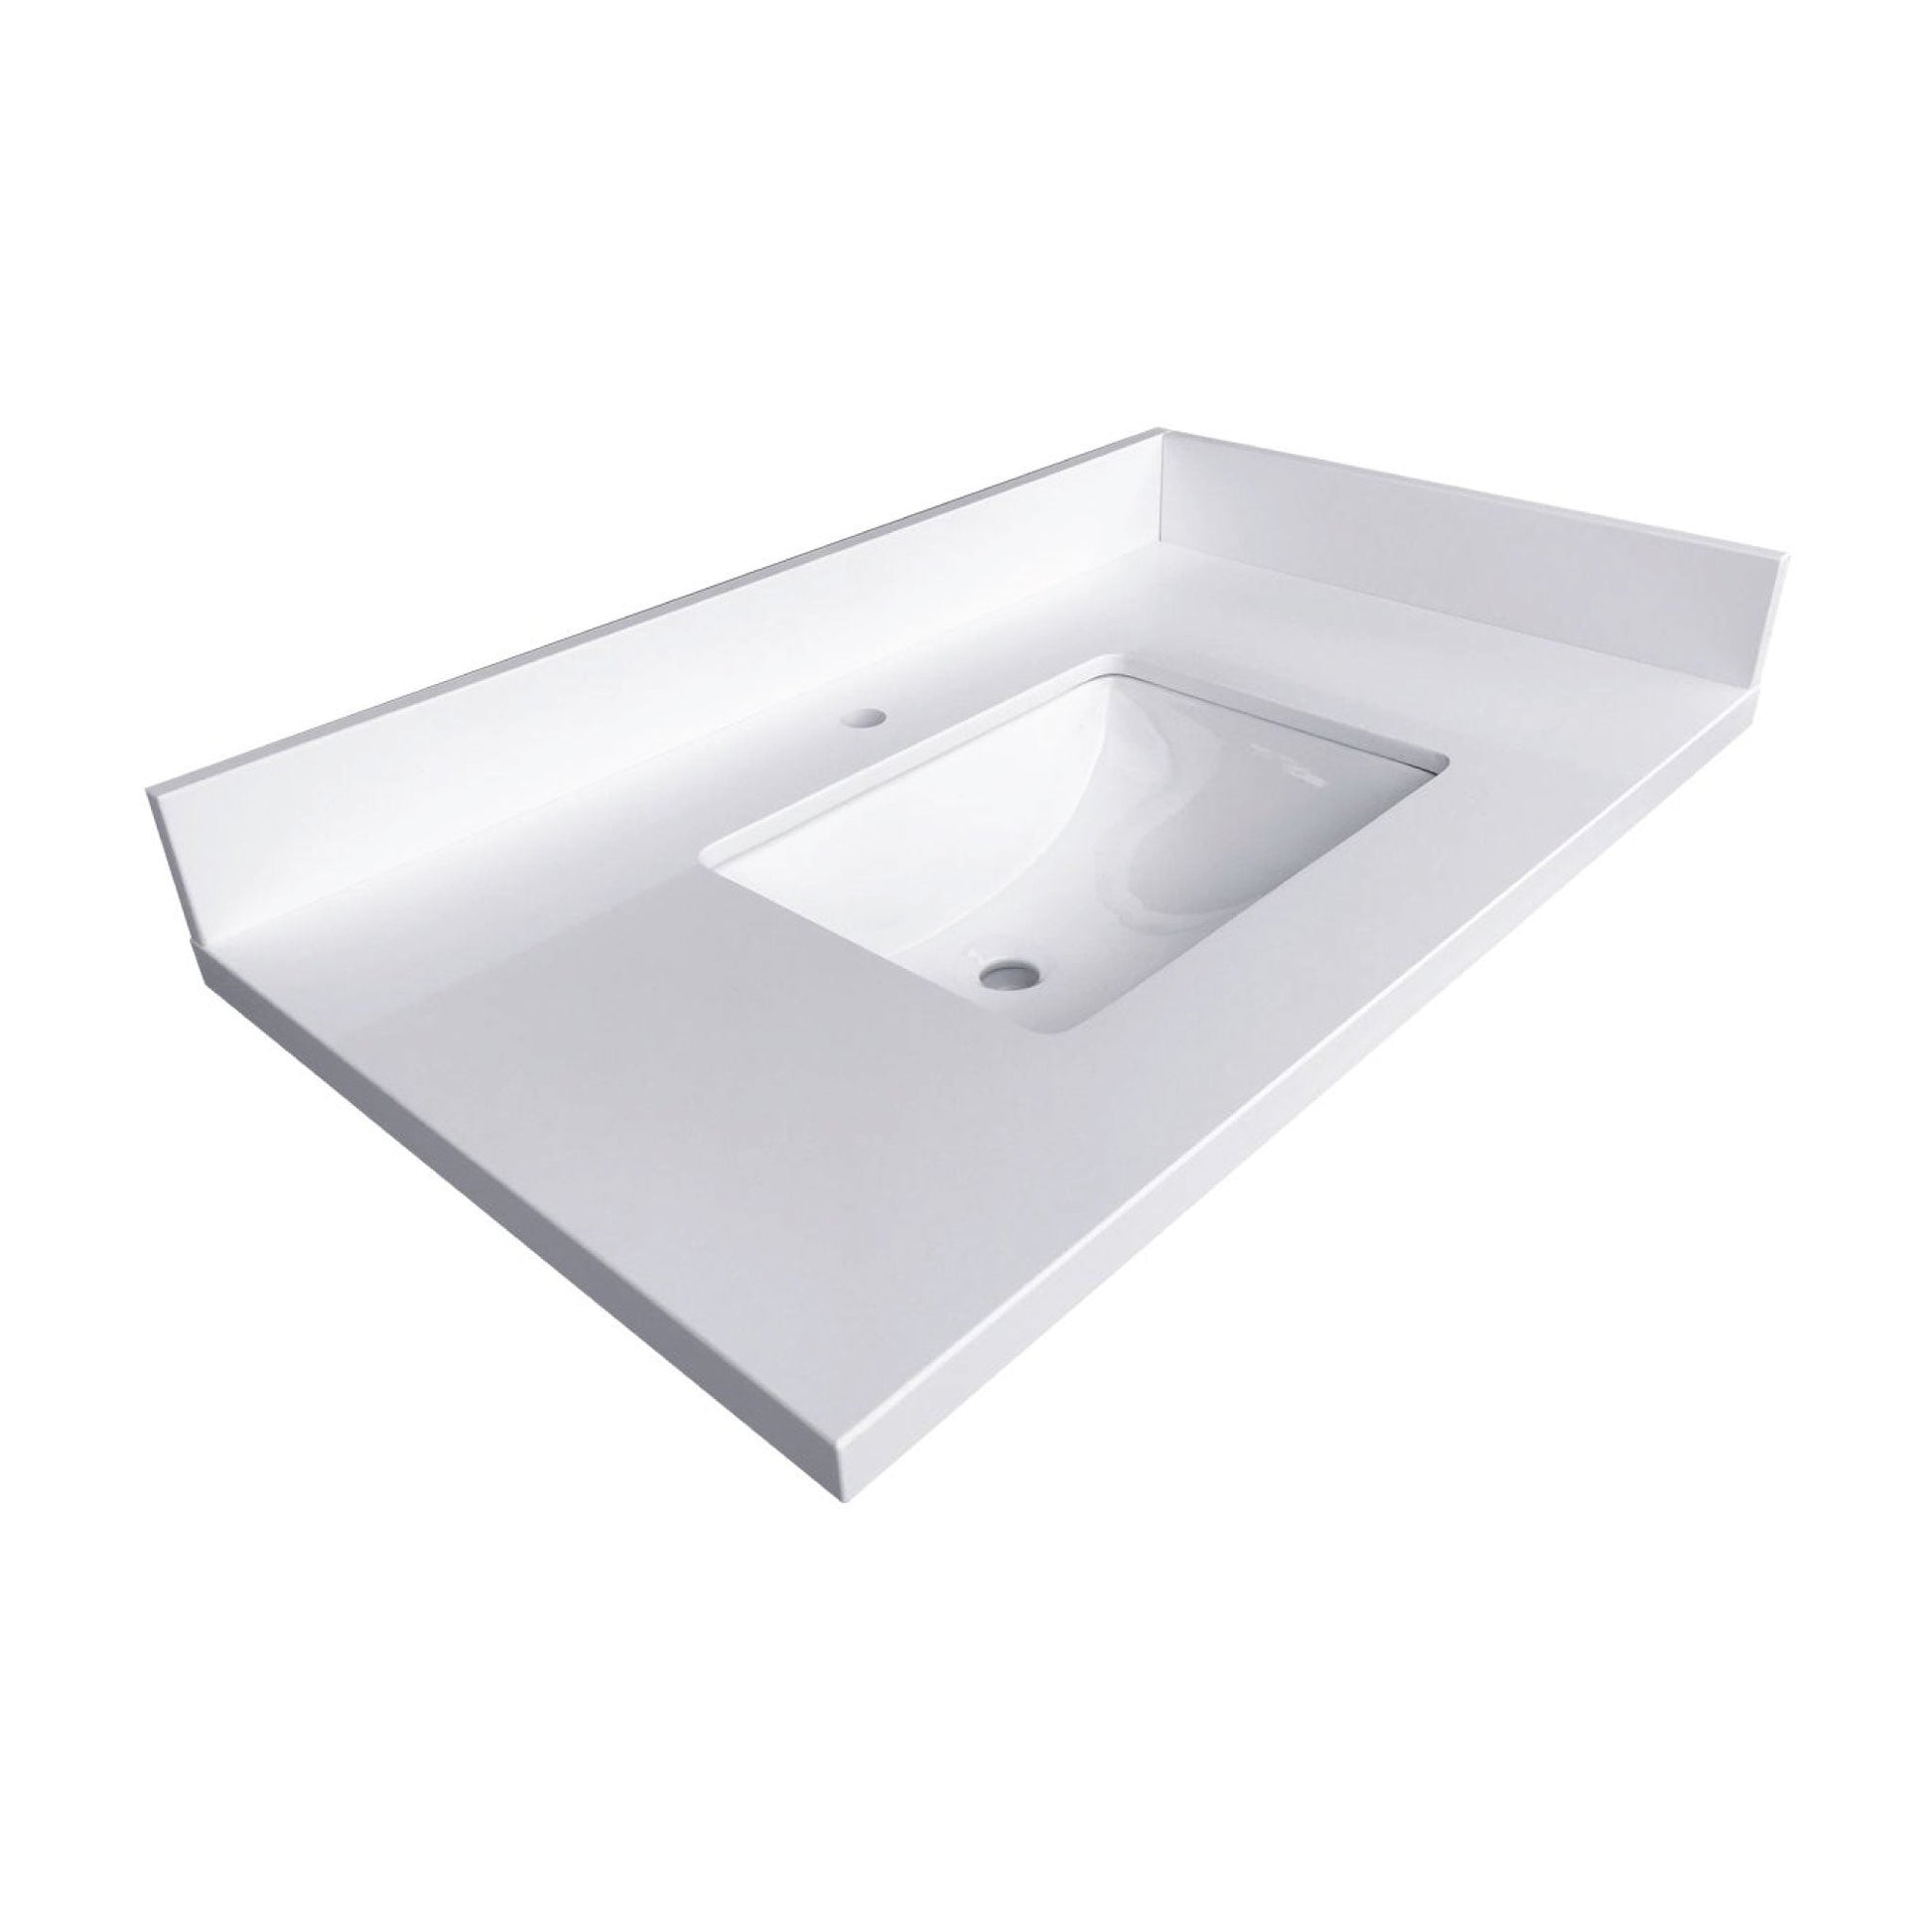 Ratel 38" x 23" White Quartz Vanity Top With Single Undermount Sink